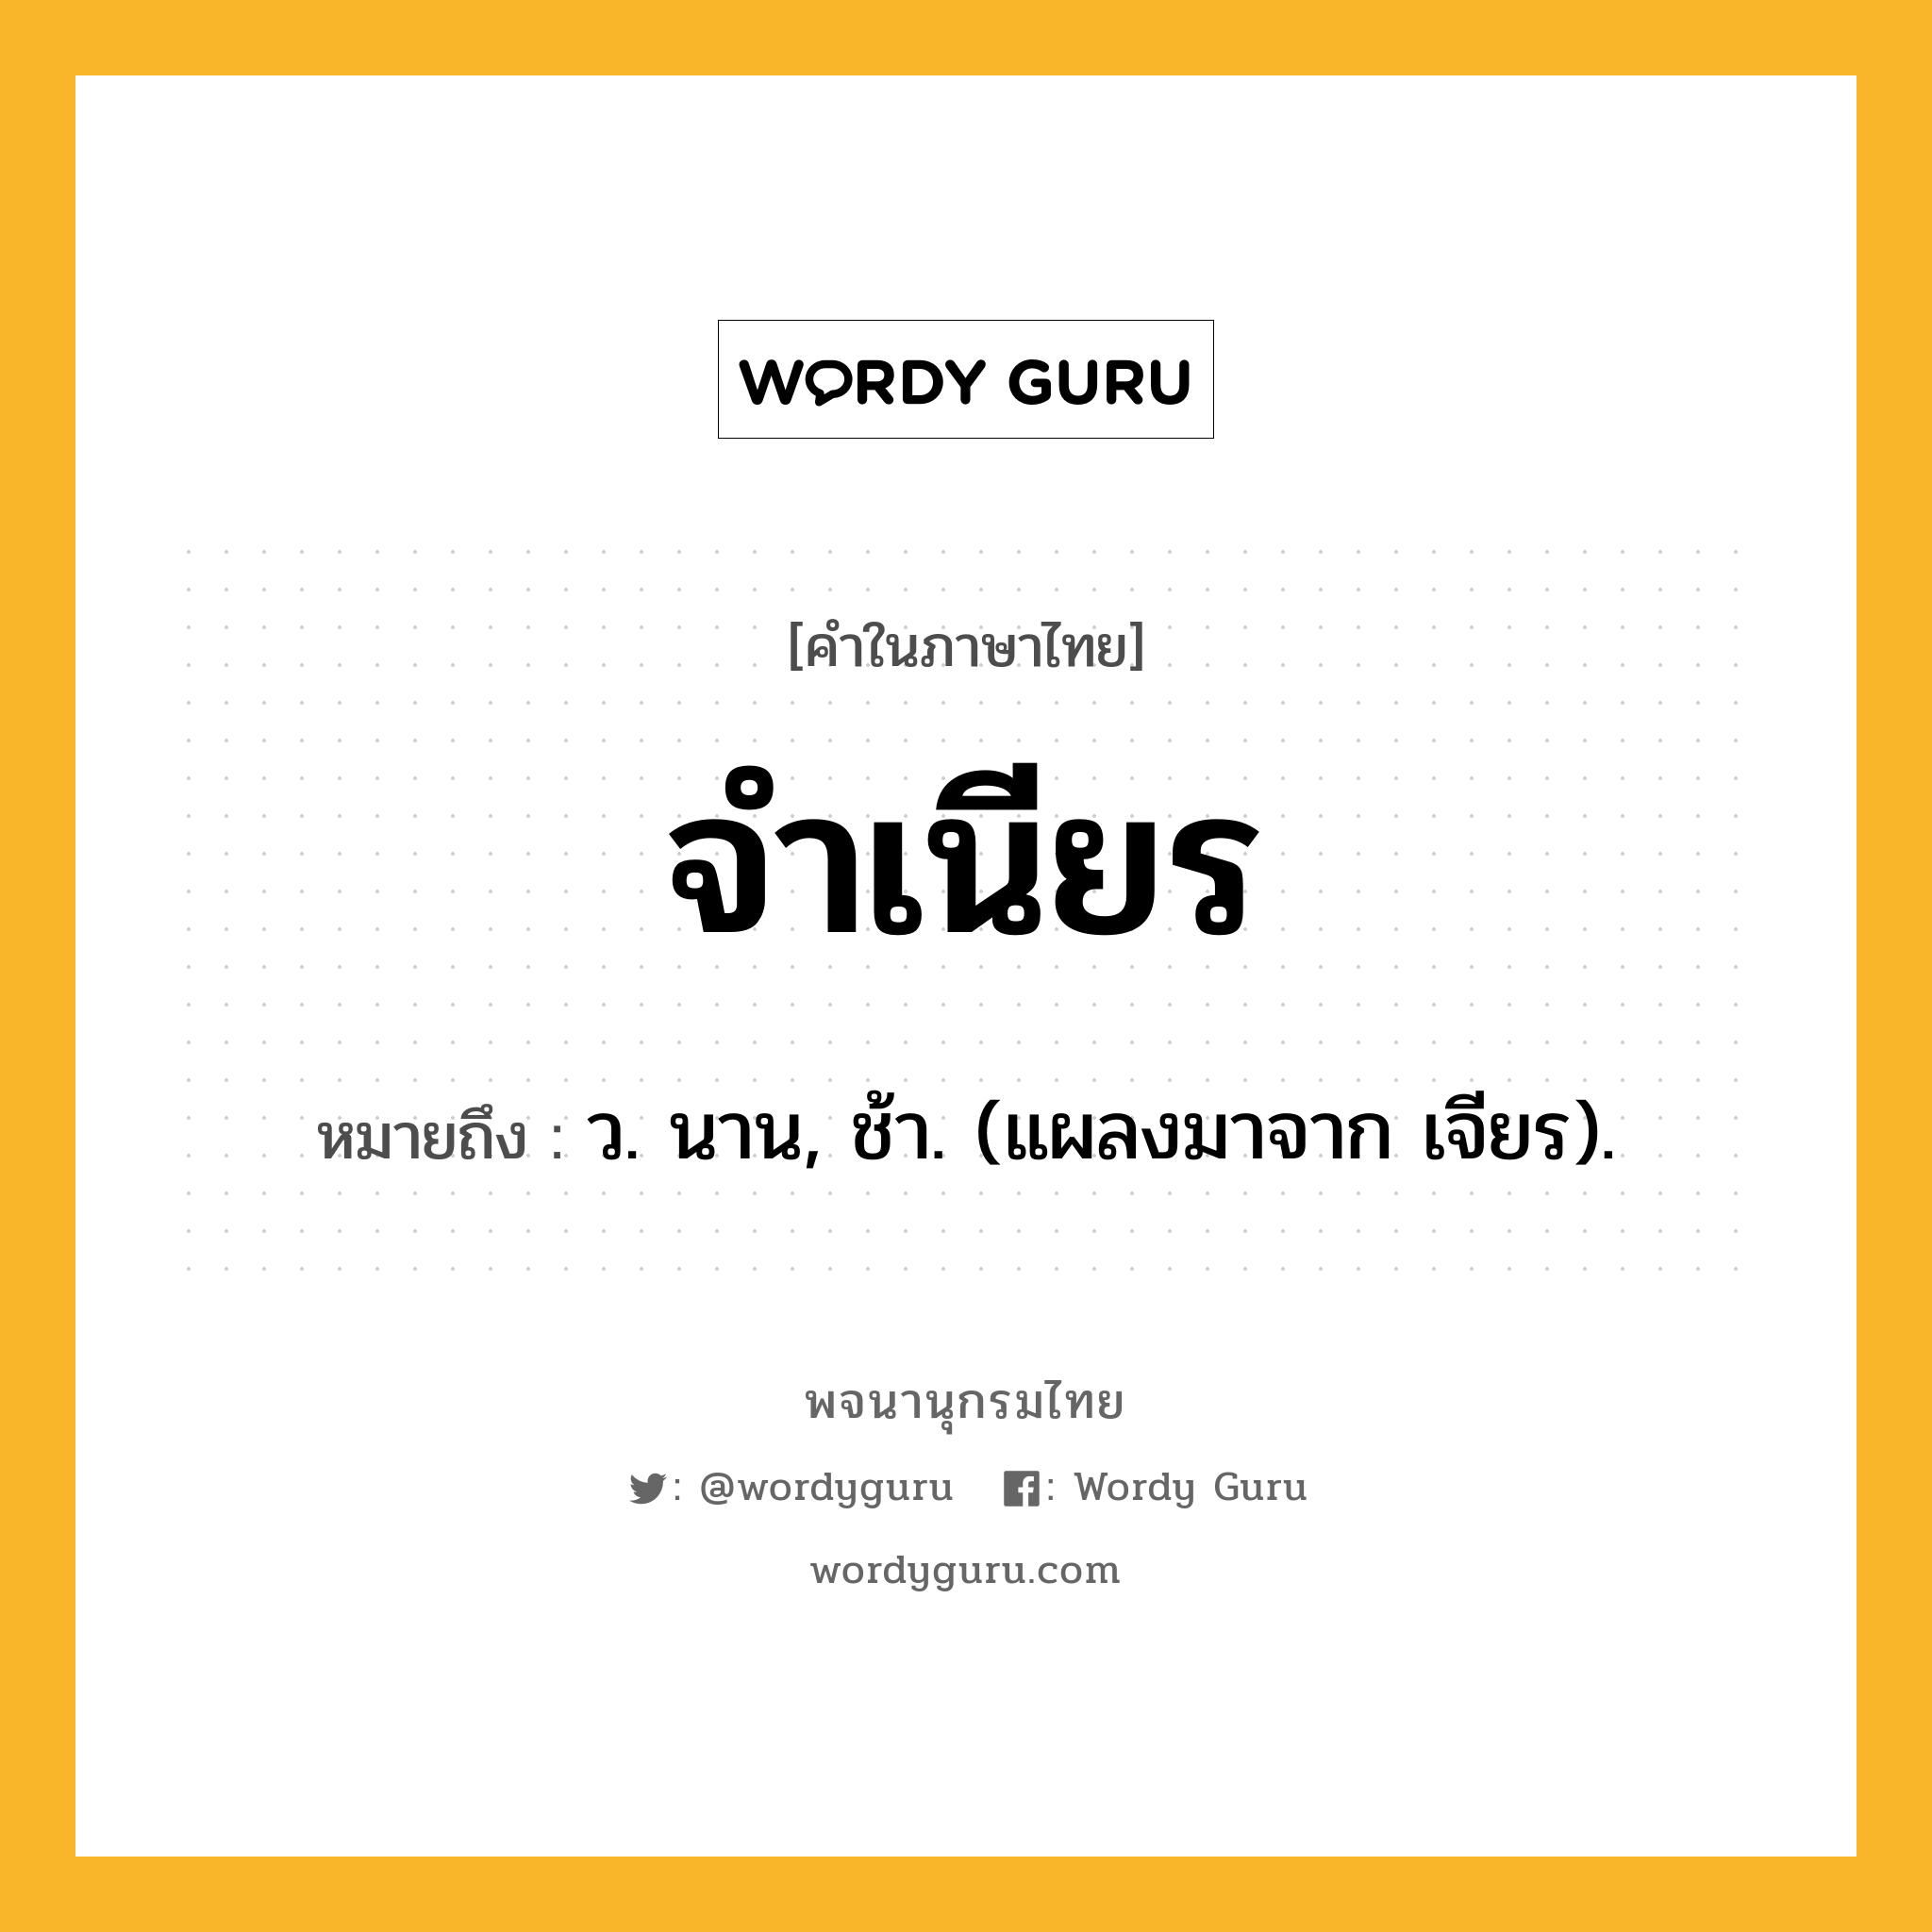 จำเนียร ความหมาย หมายถึงอะไร?, คำในภาษาไทย จำเนียร หมายถึง ว. นาน, ช้า. (แผลงมาจาก เจียร).